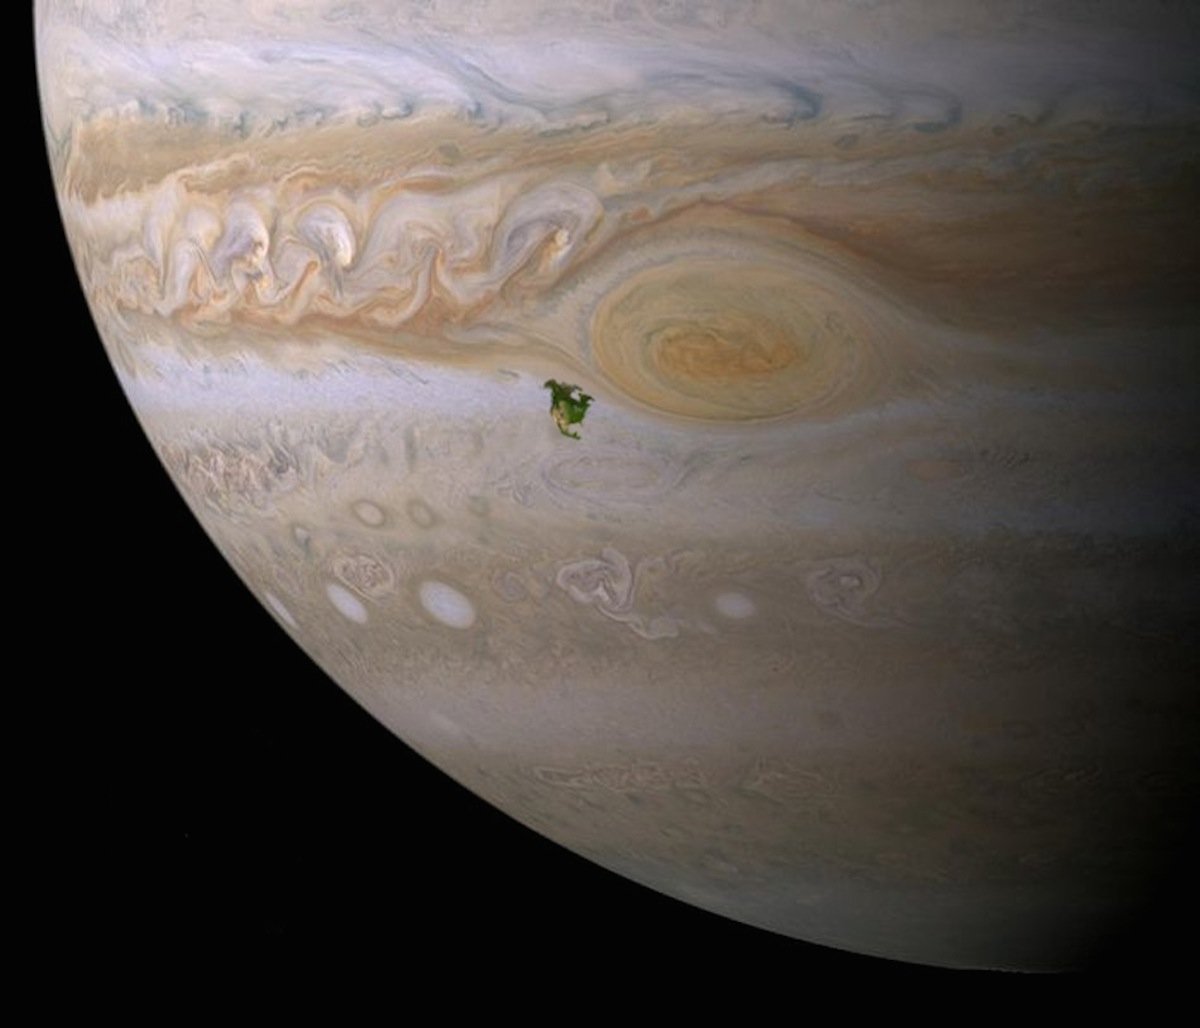 Северна Америка во споредба со црвените дамки на Јупитер. Бурите на Јупитер би го проголтале целиот континент.